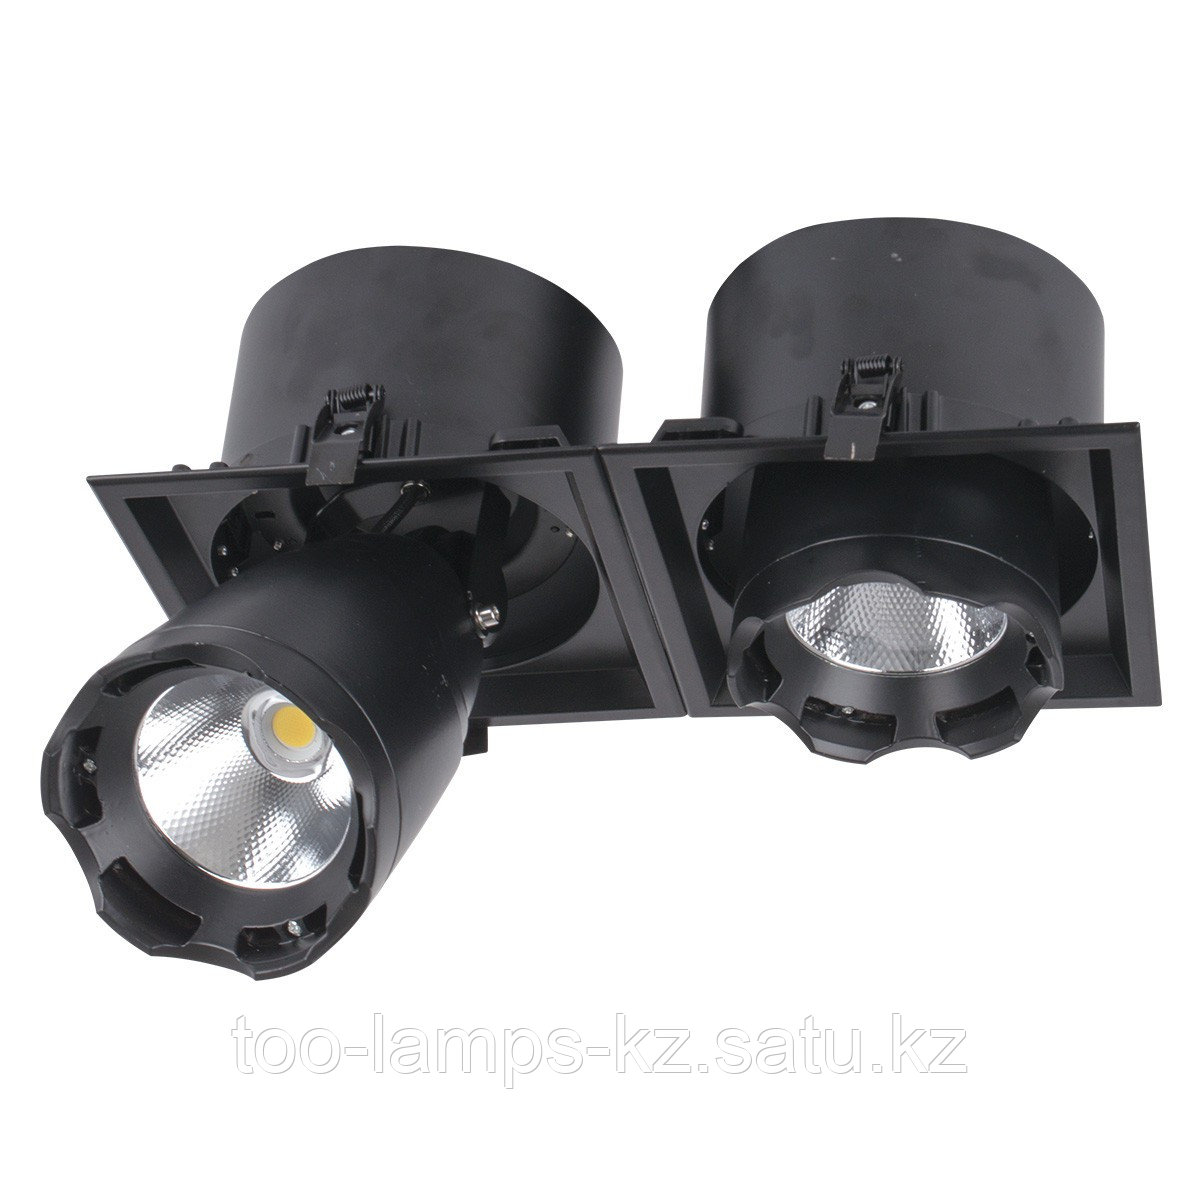 Светильник направленного света, светодиодный, потолочный LED LS-DK914-2 2x40W BLACK 5700K